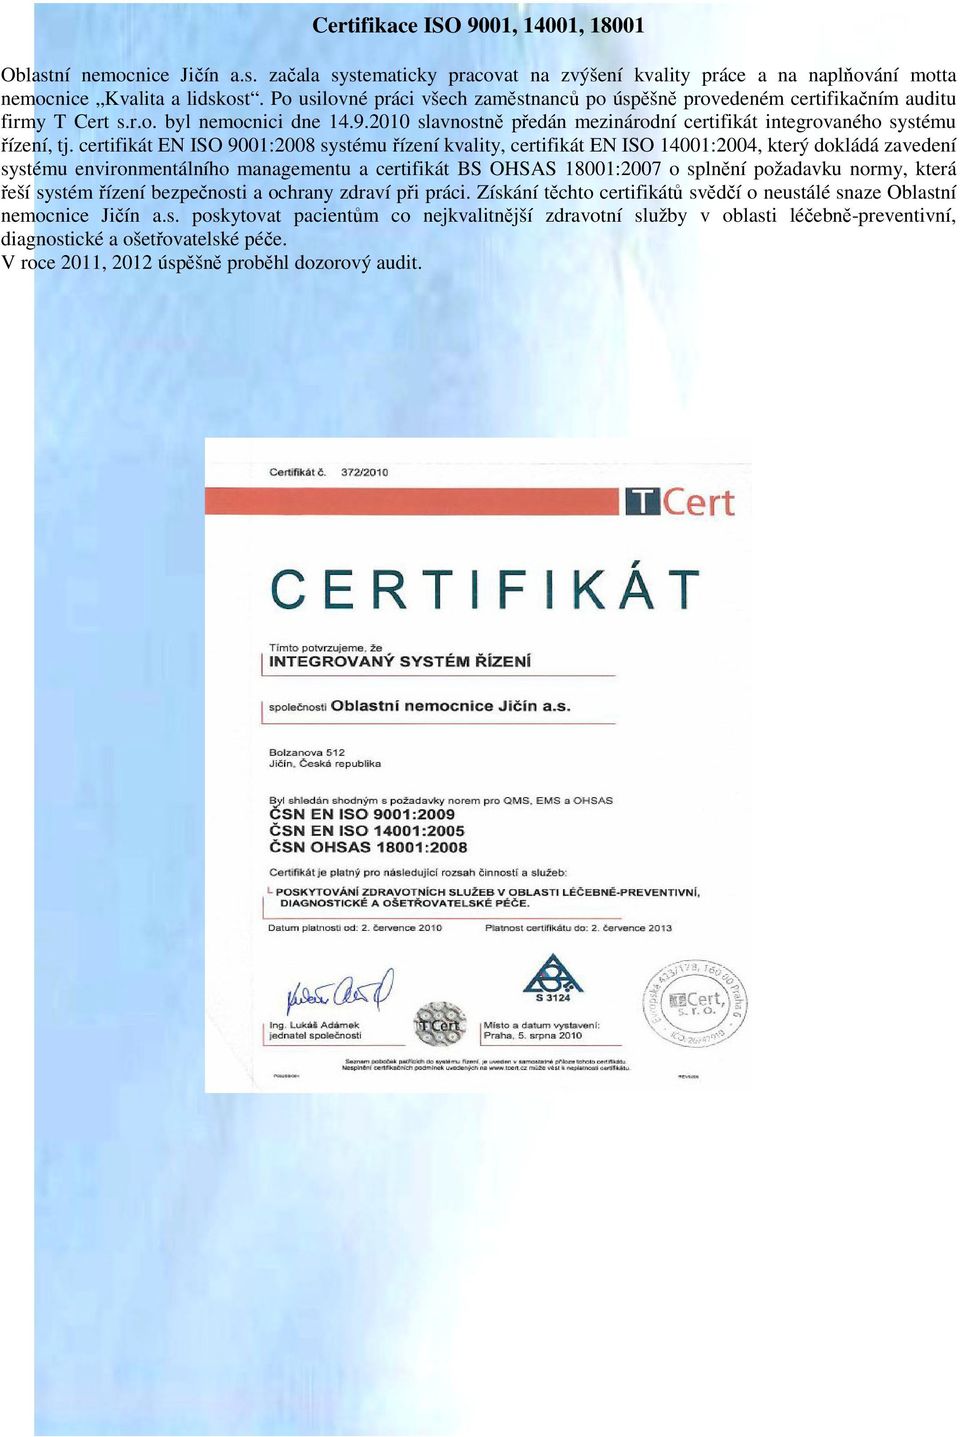 2010 slavnostně předán mezinárodní certifikát integrovaného systému řízení, tj.